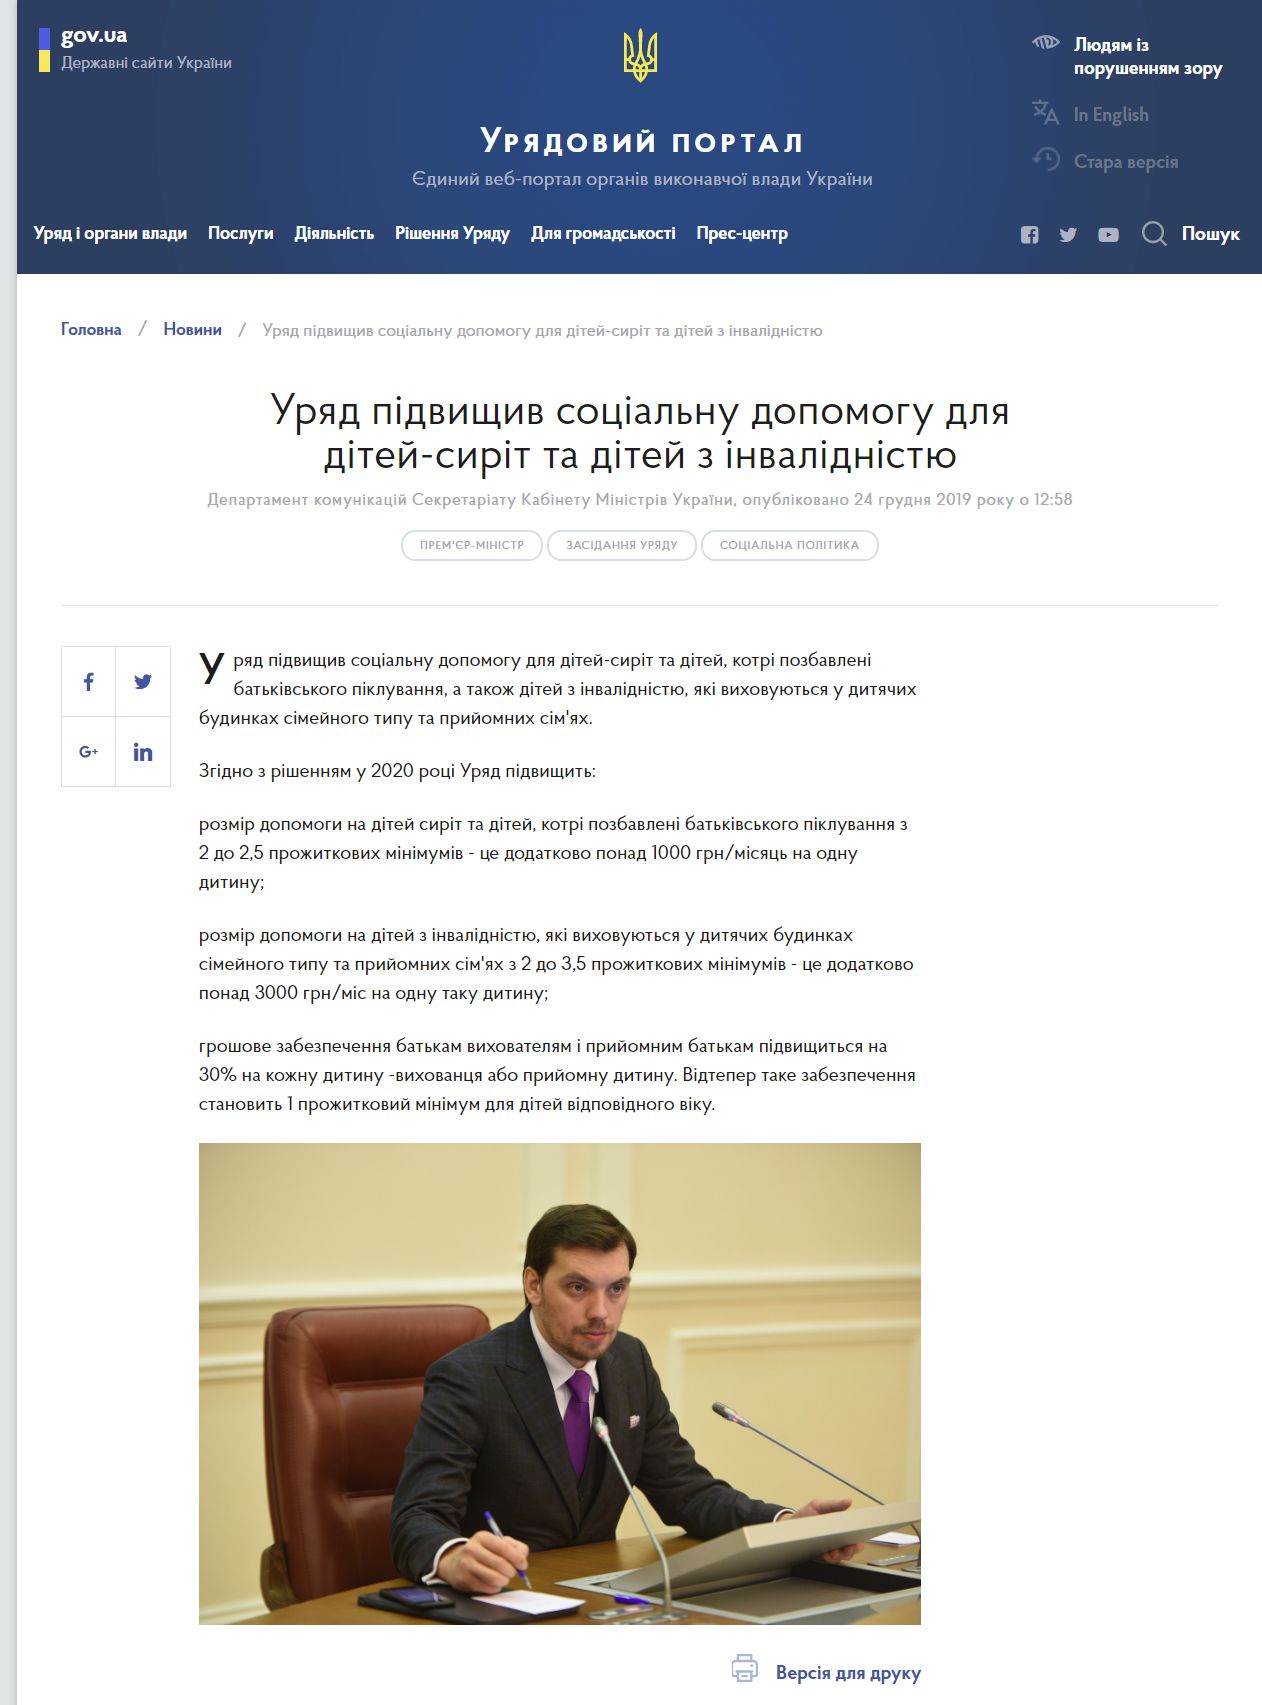 https://www.kmu.gov.ua/news/uryad-pidvishchiv-socialnu-dopomogu-dlya-ditej-sirit-ta-ditej-z-invalidnistyu